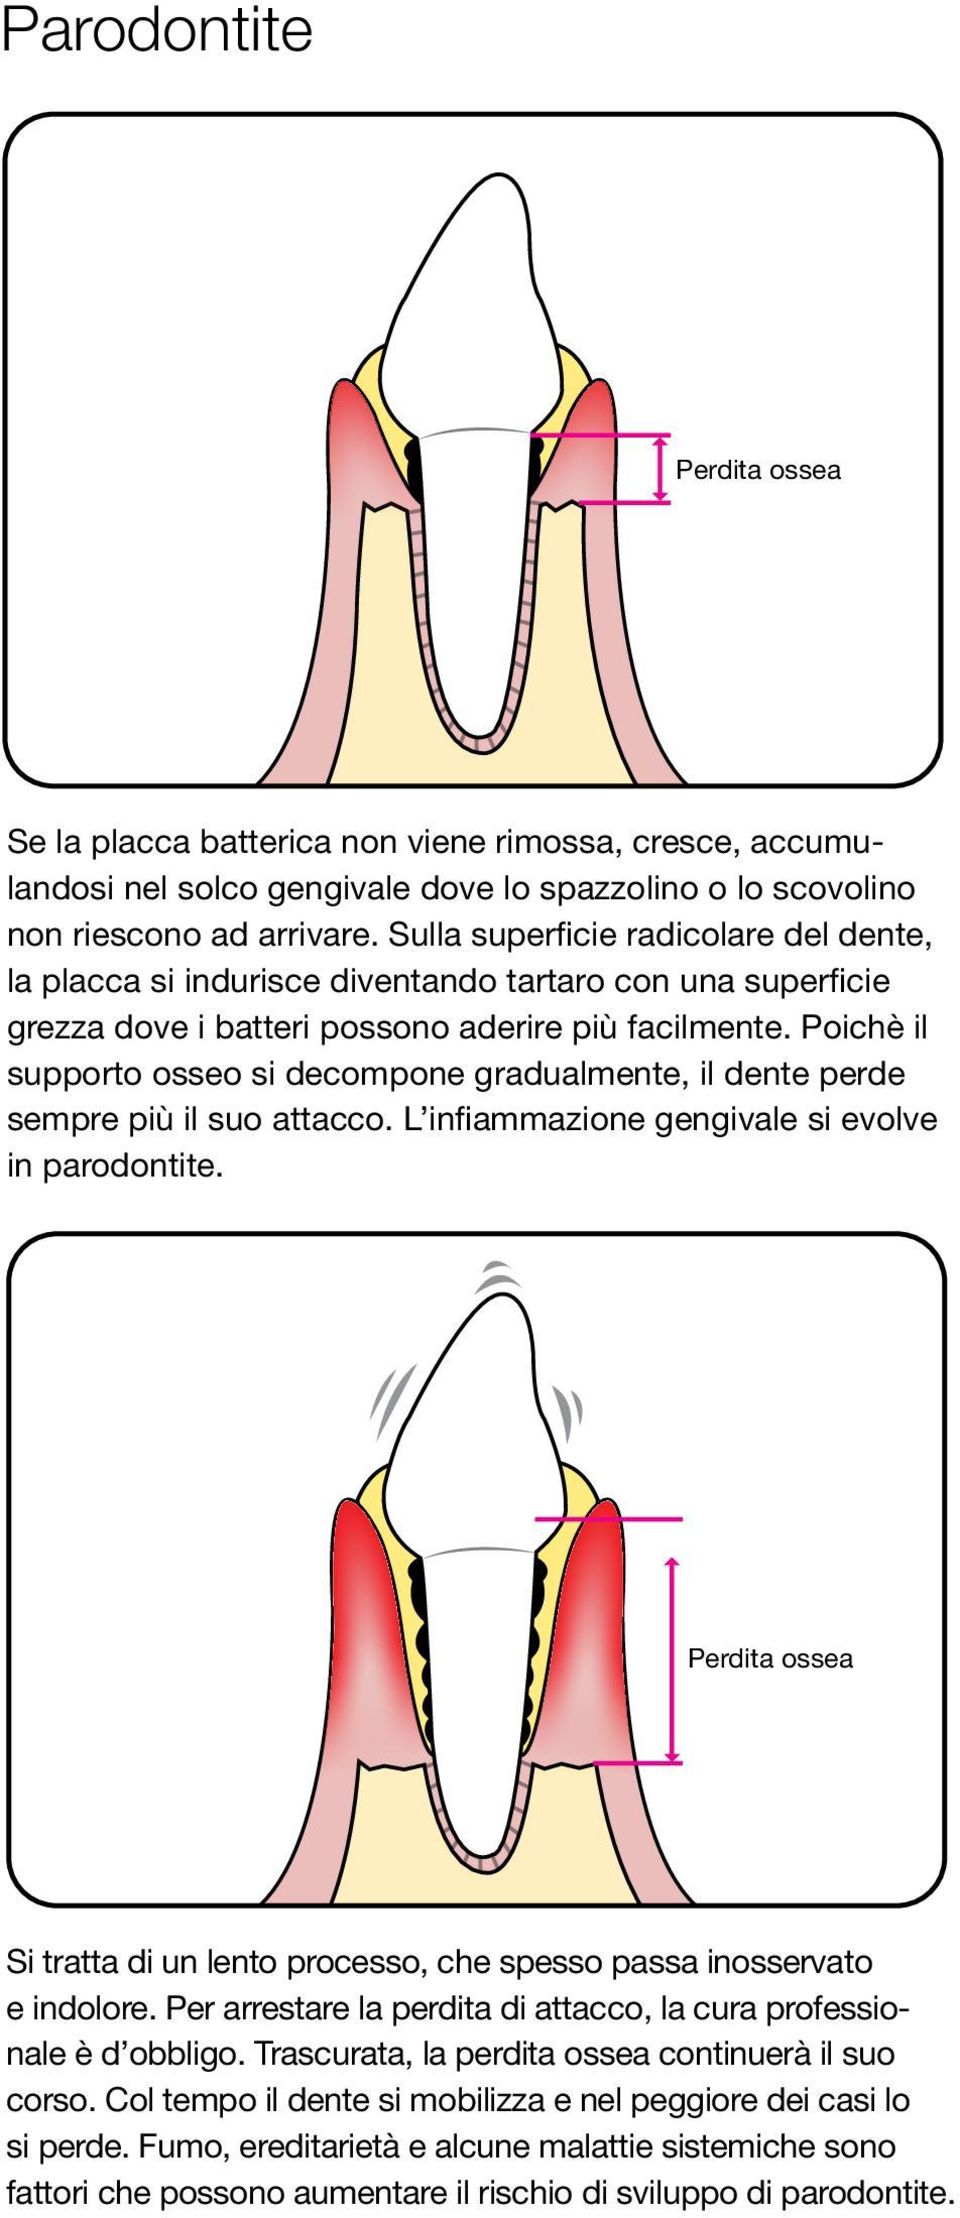 Poichè il supporto osseo si decompone gradualmente, il dente perde sempre più il suo attacco. L infiammazione gengivale si evolve in parodontite.